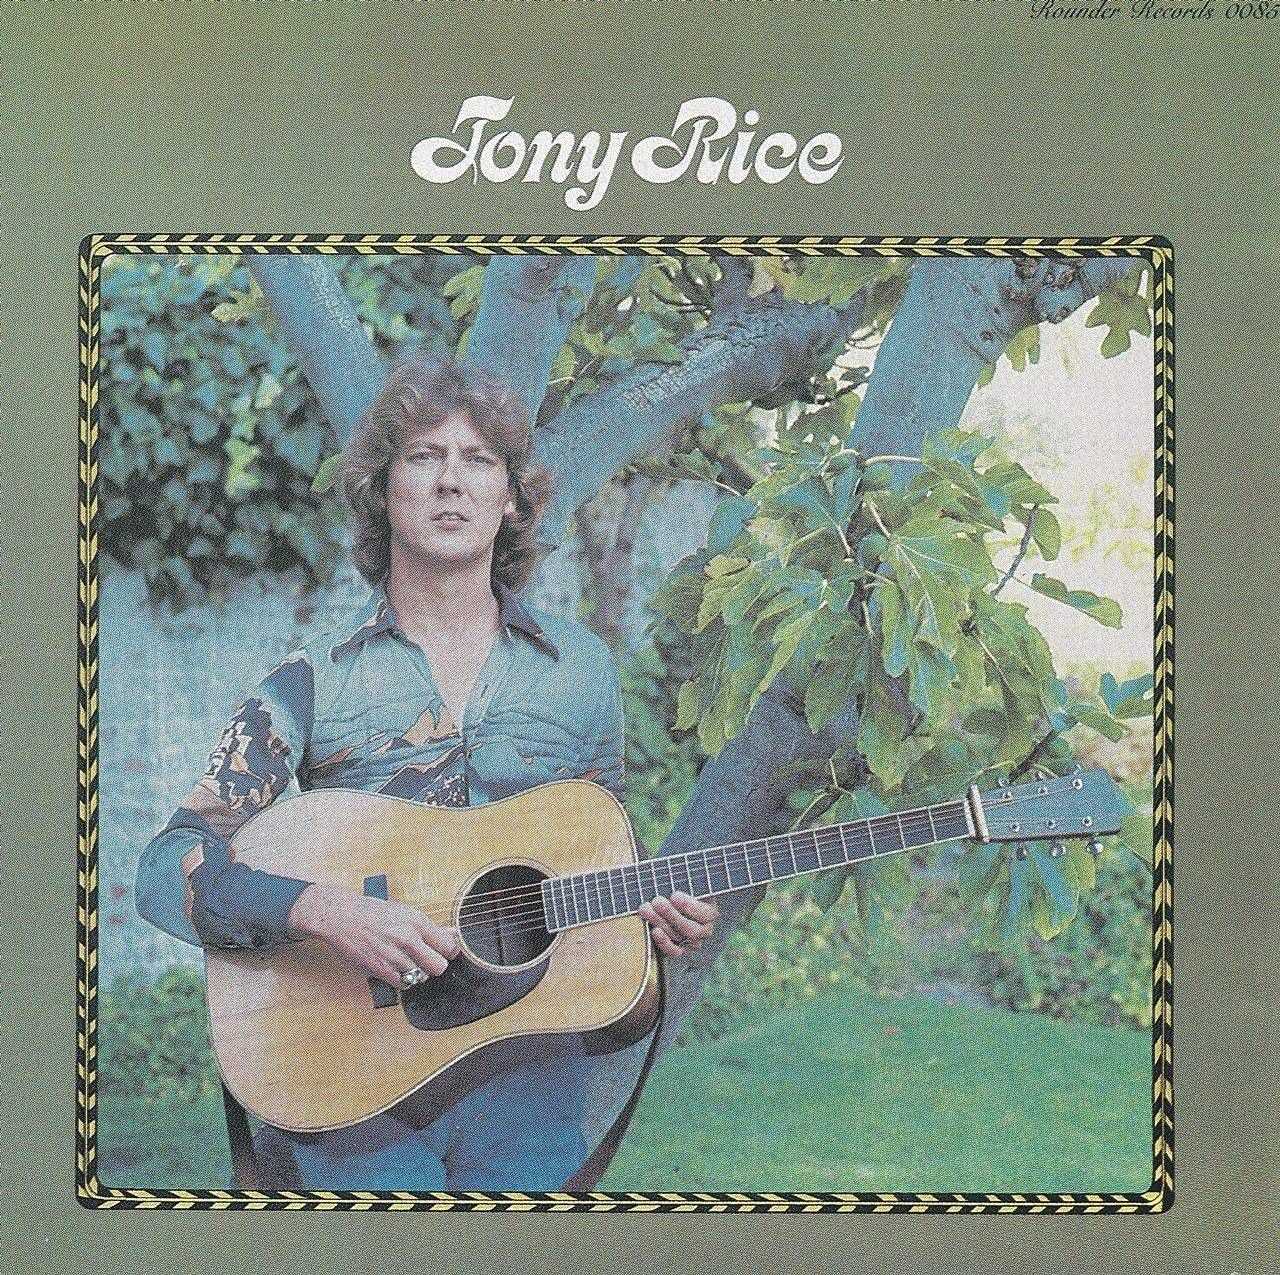 Tony Rice - Tony Rice cover album